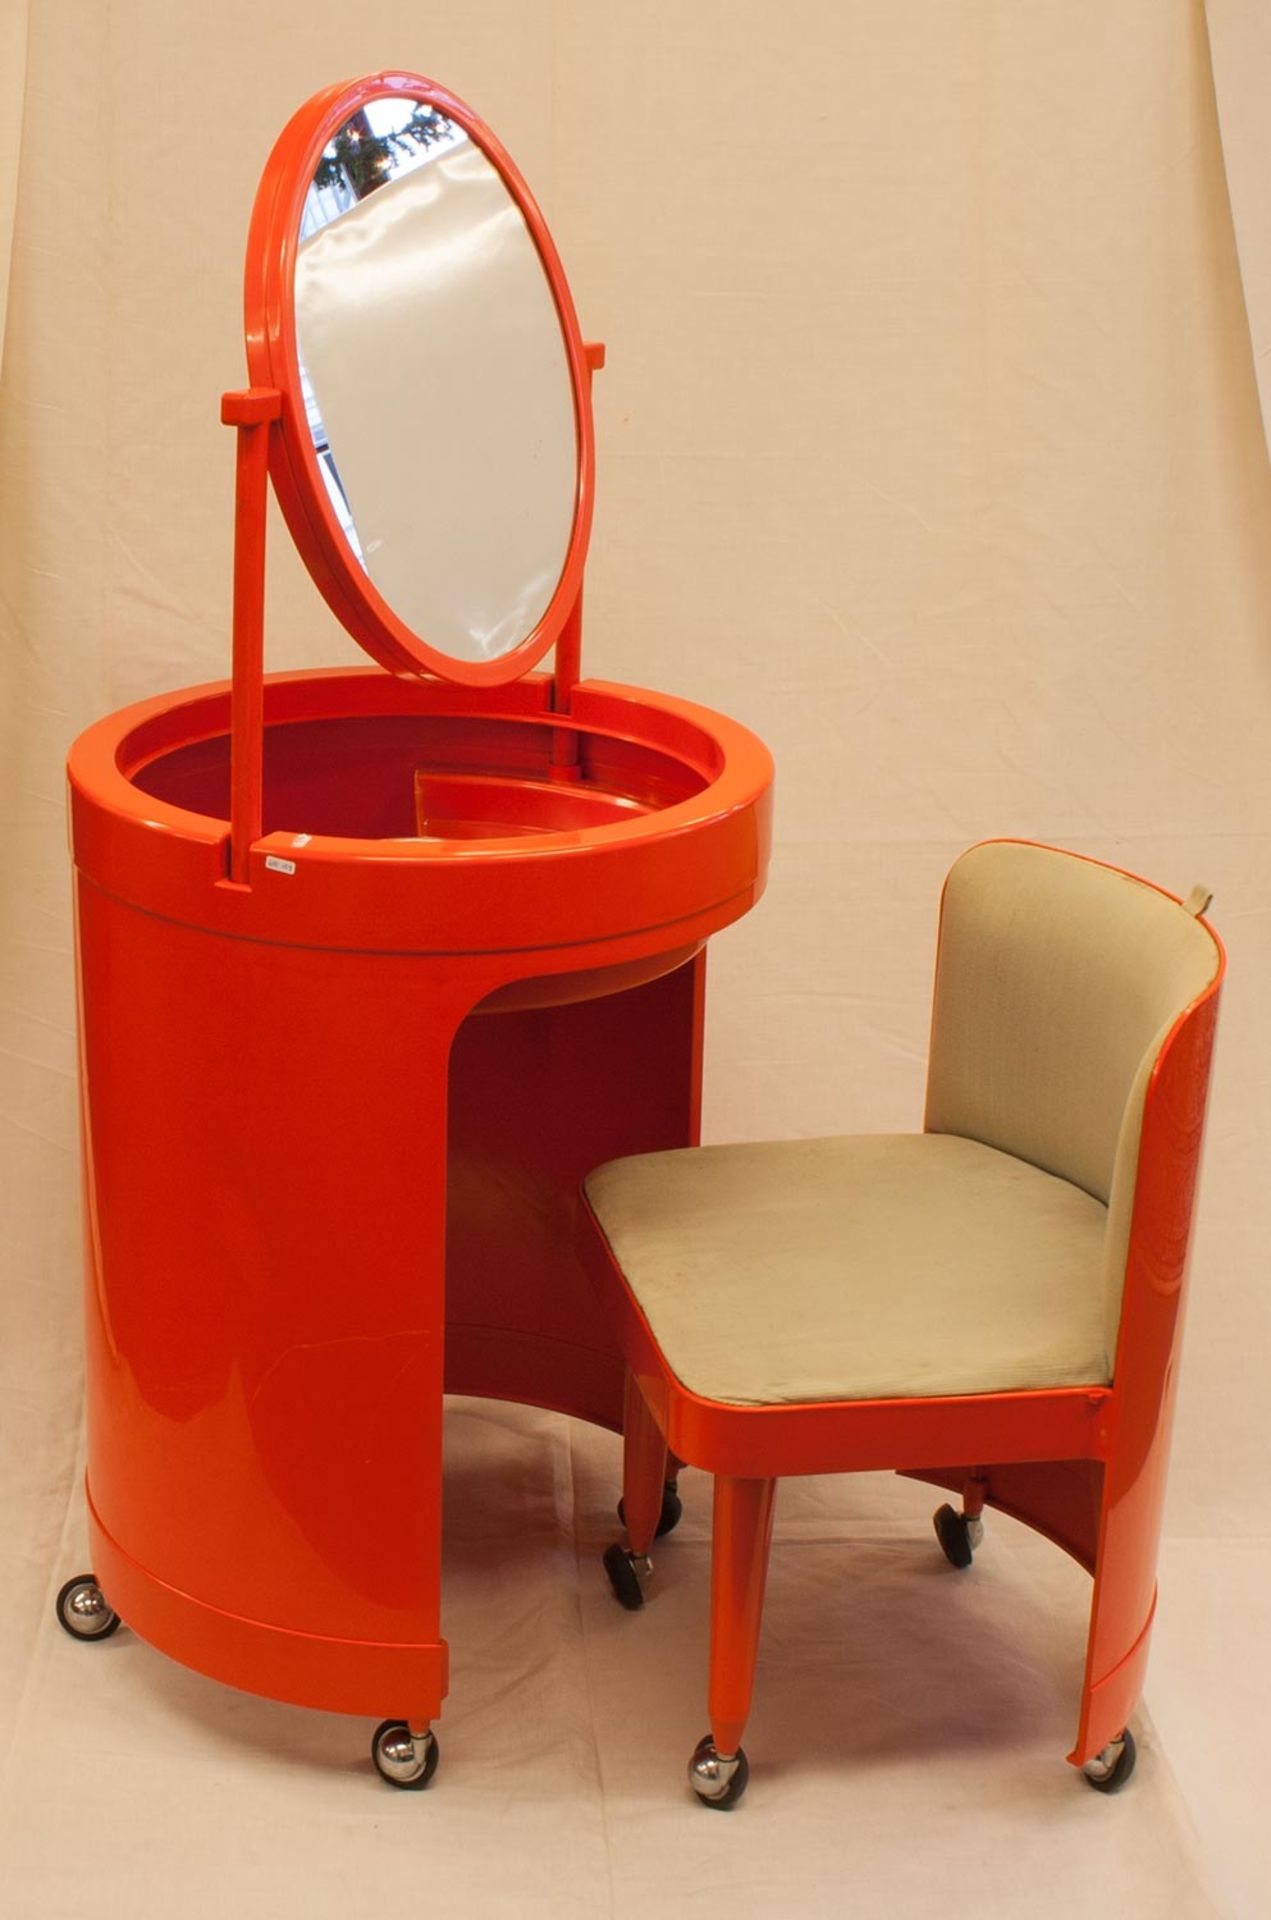 FrisierkommodeItalien, Industriedesign um 1970er Jahre, orangefarbener Kunststoff, tonnenförmig,